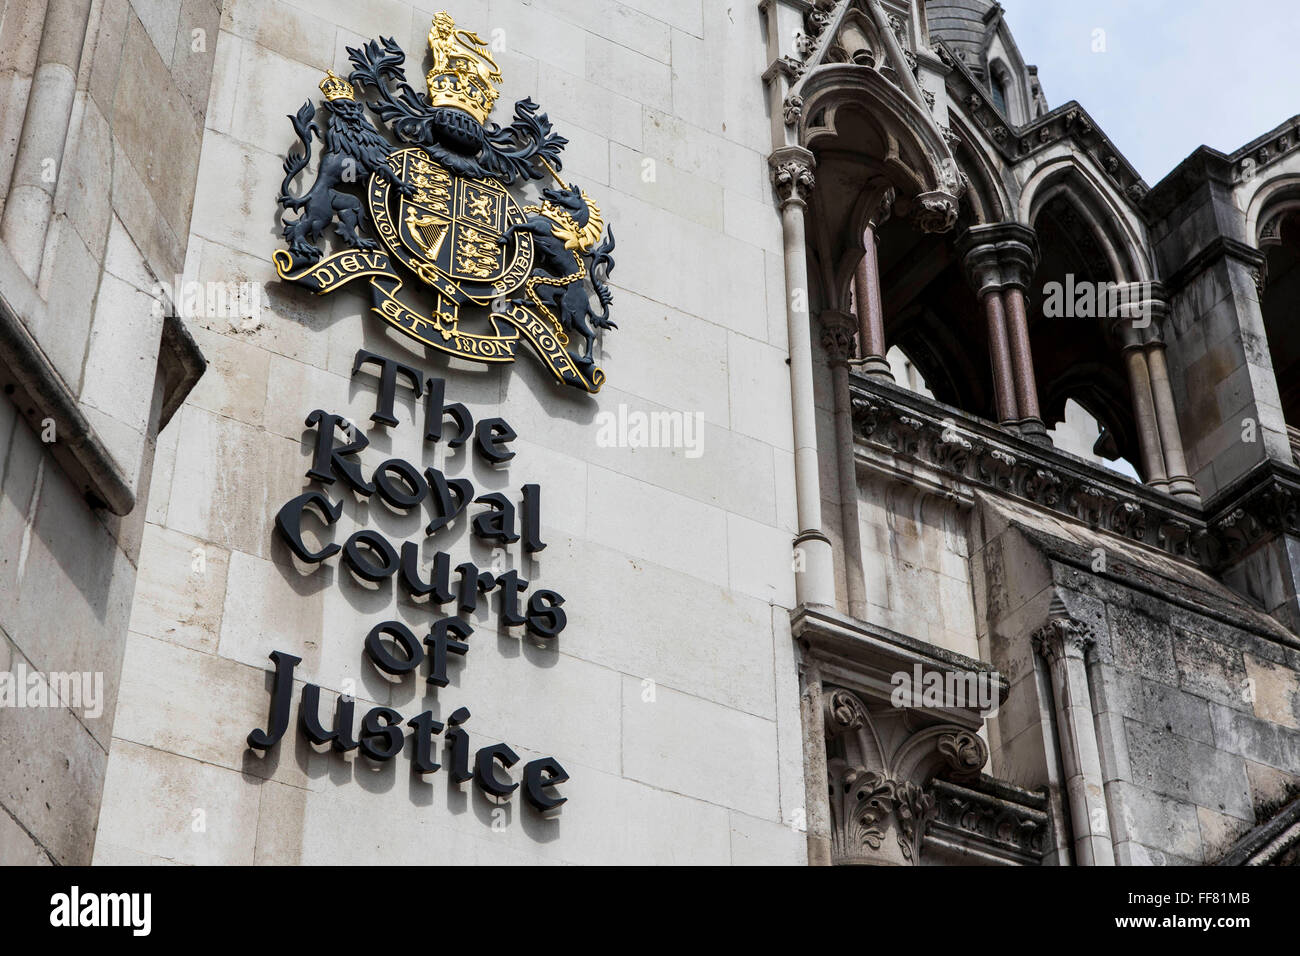 El signo fuera de las Cortes Reales de Justicia, comúnmente llamados los Tribunales, es un edificio de la Corte de Londres, que alberga tanto el Tribunal Superior y el Tribunal de Apelación de Inglaterra y Gales. Londres, Reino Unido. Foto de stock